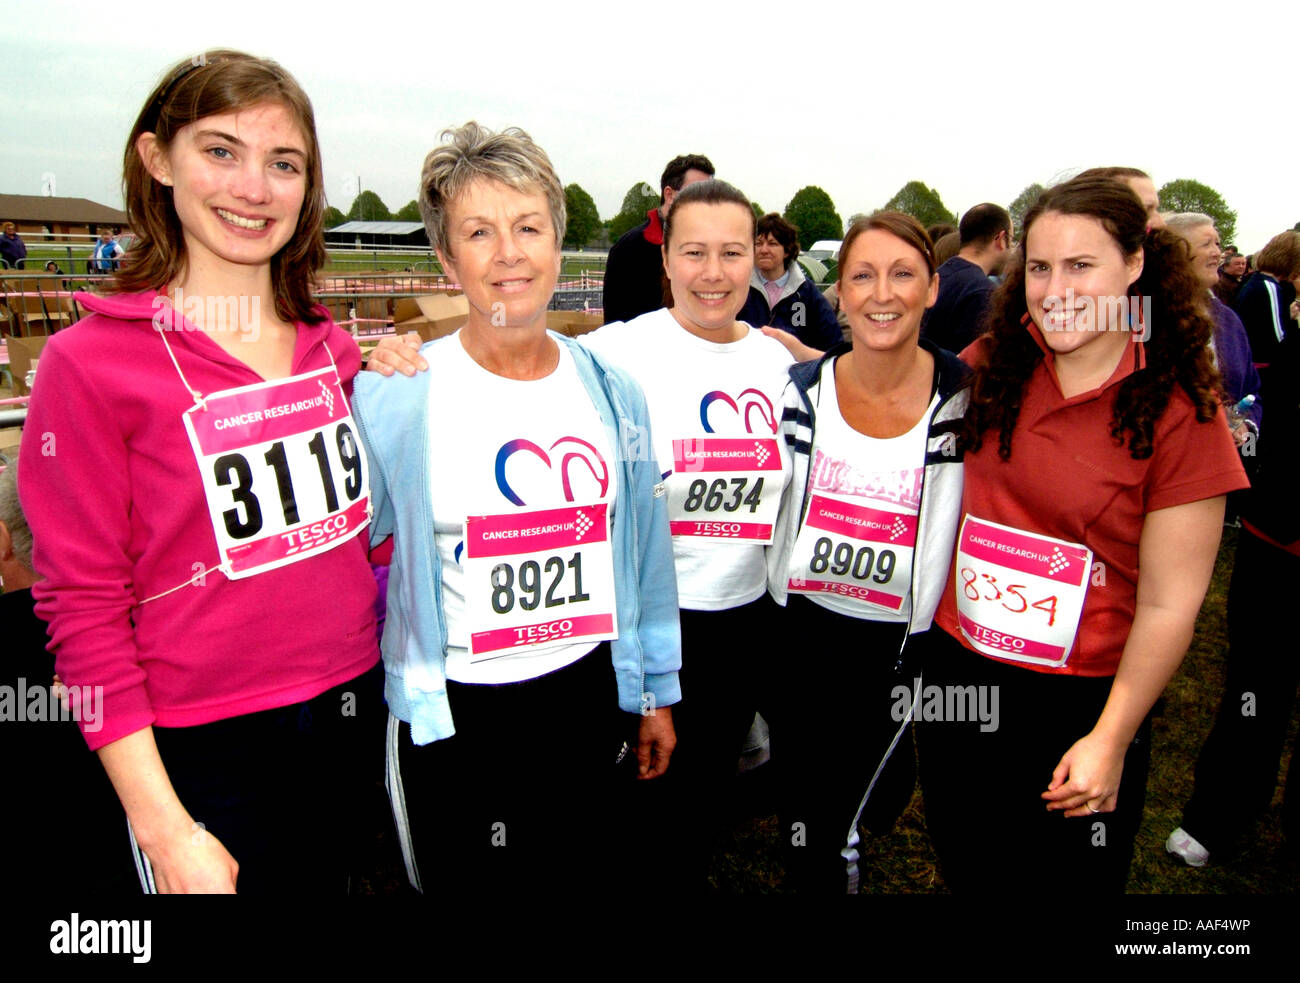 Gruppe von Frau beim Rennen für Leben-Charity-event Stockfoto